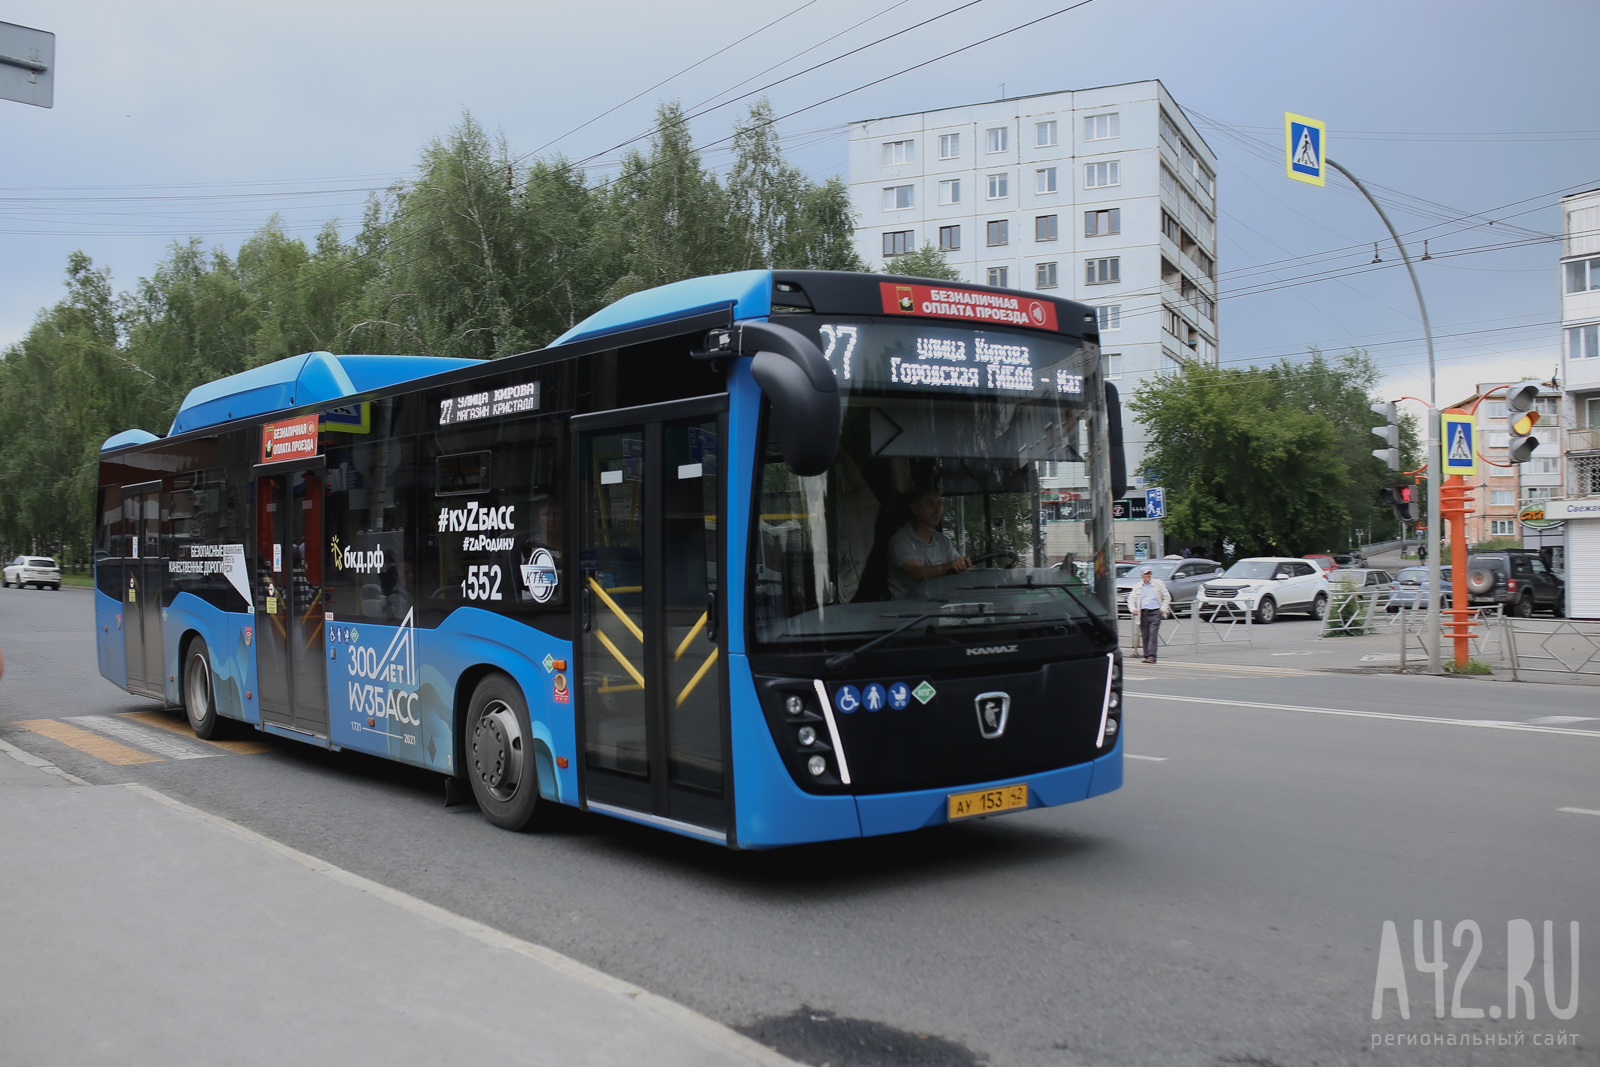 «Душегубки, а не автобусы»: кемеровчане массово жалуются мэру на жару в транспорте